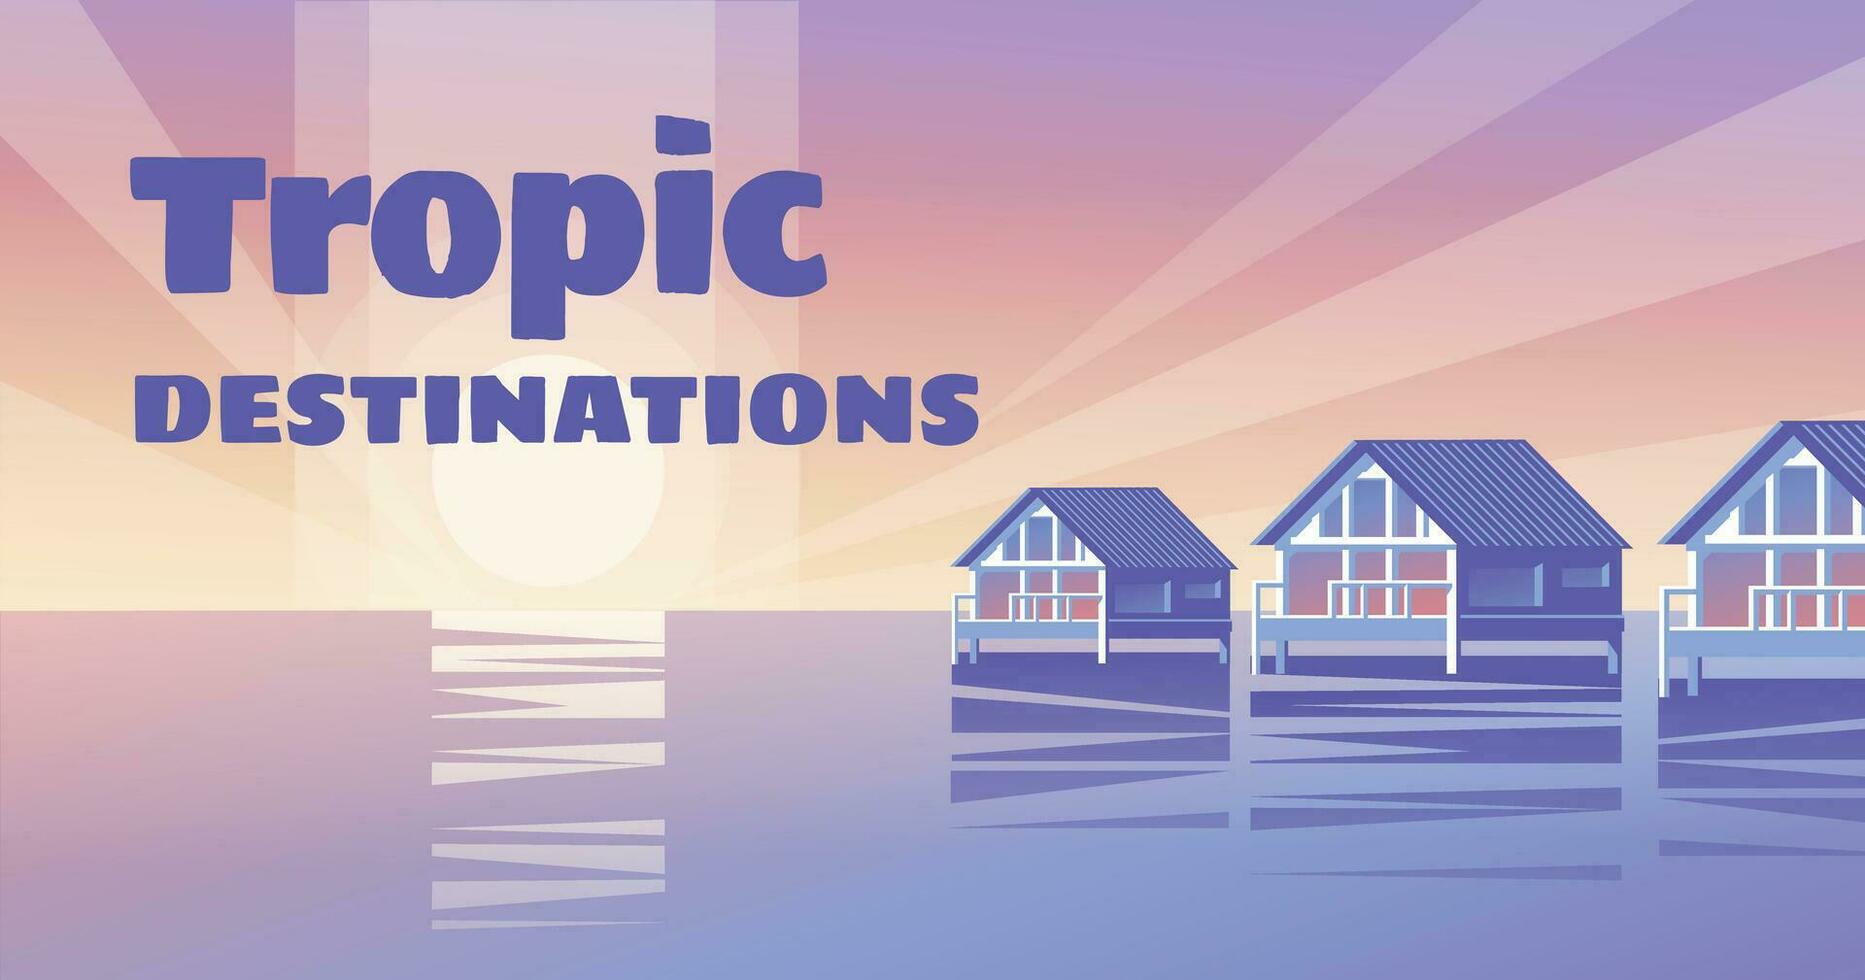 tropical de madera casas en el agua. amanecer y reflexión. destino de viaje y alojamiento en vacaciones. vector ilustración